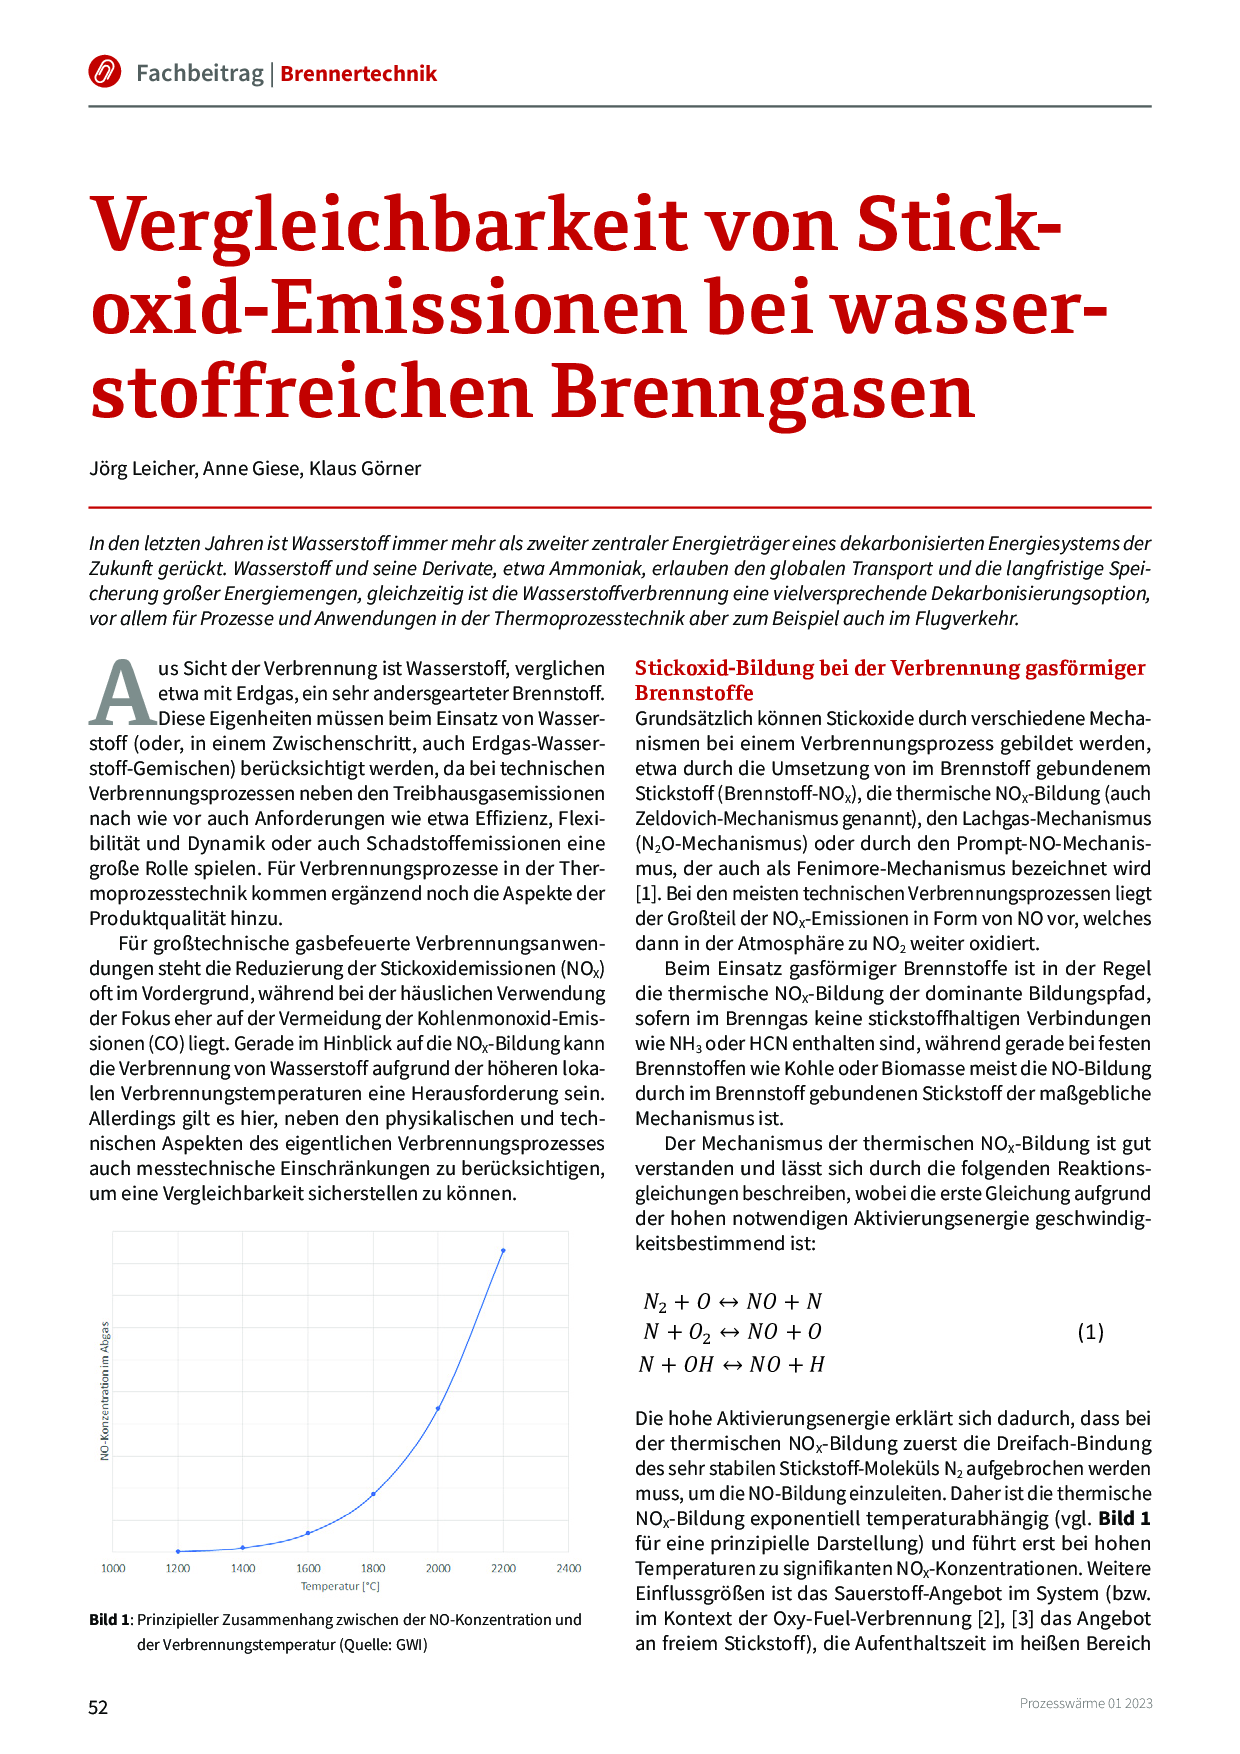 Vergleichbarkeit von Stickoxid-Emissionen bei wasserstoffreichen Brenngasen